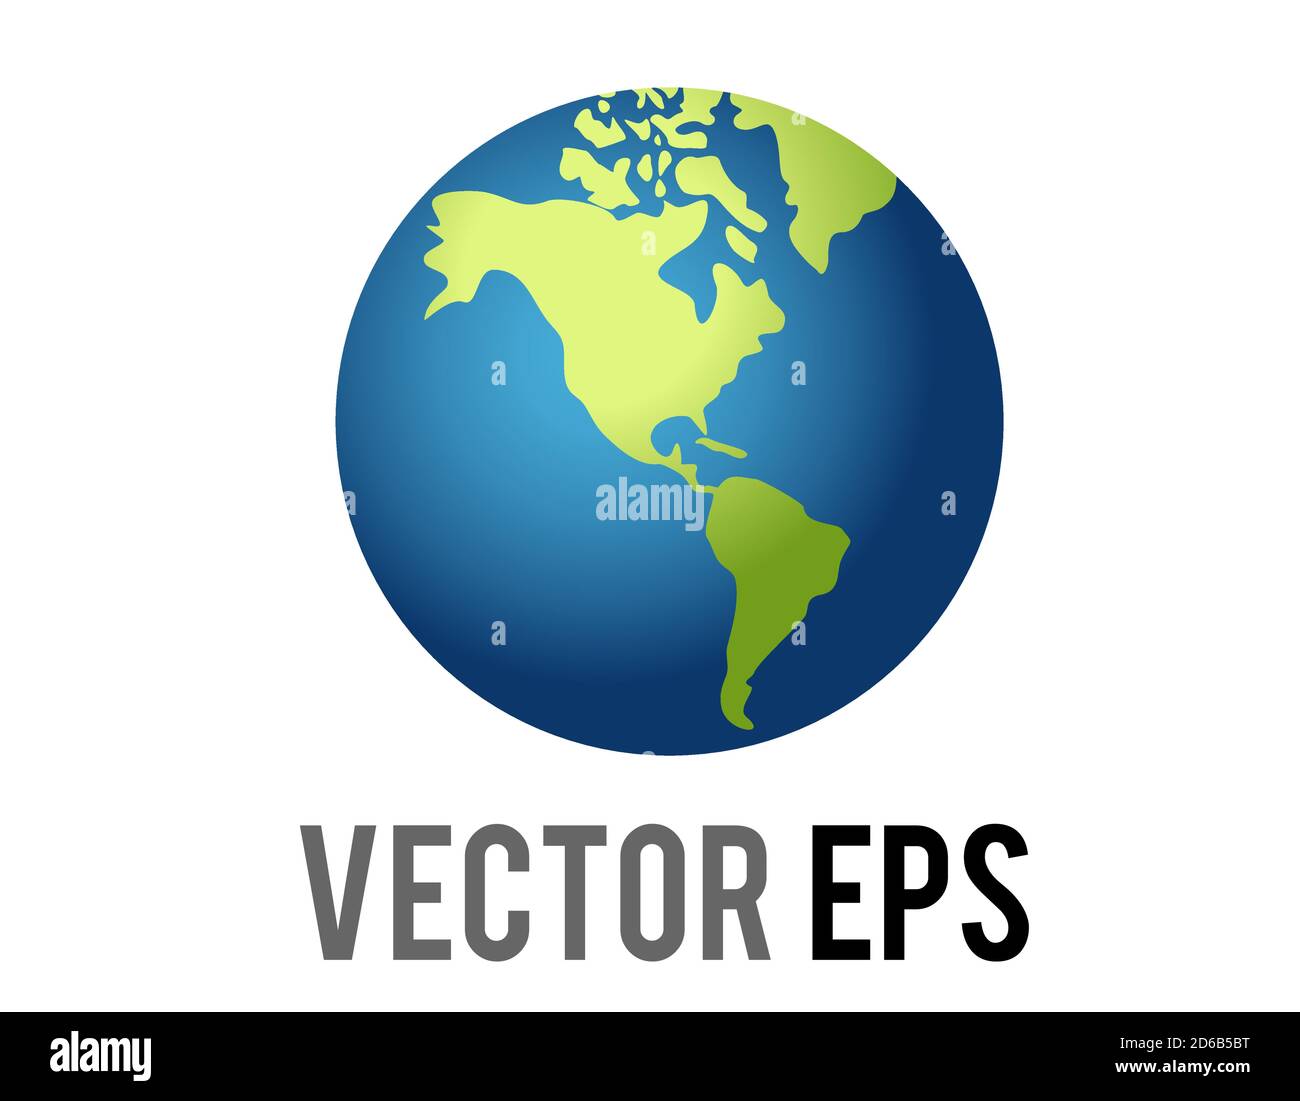 Le globe vectoriel isolé montrant l'icône des Amériques, montrant le Nord, l'Amérique du Sud en vert contre l'océan bleu, représente divers contenus concernant le non Illustration de Vecteur